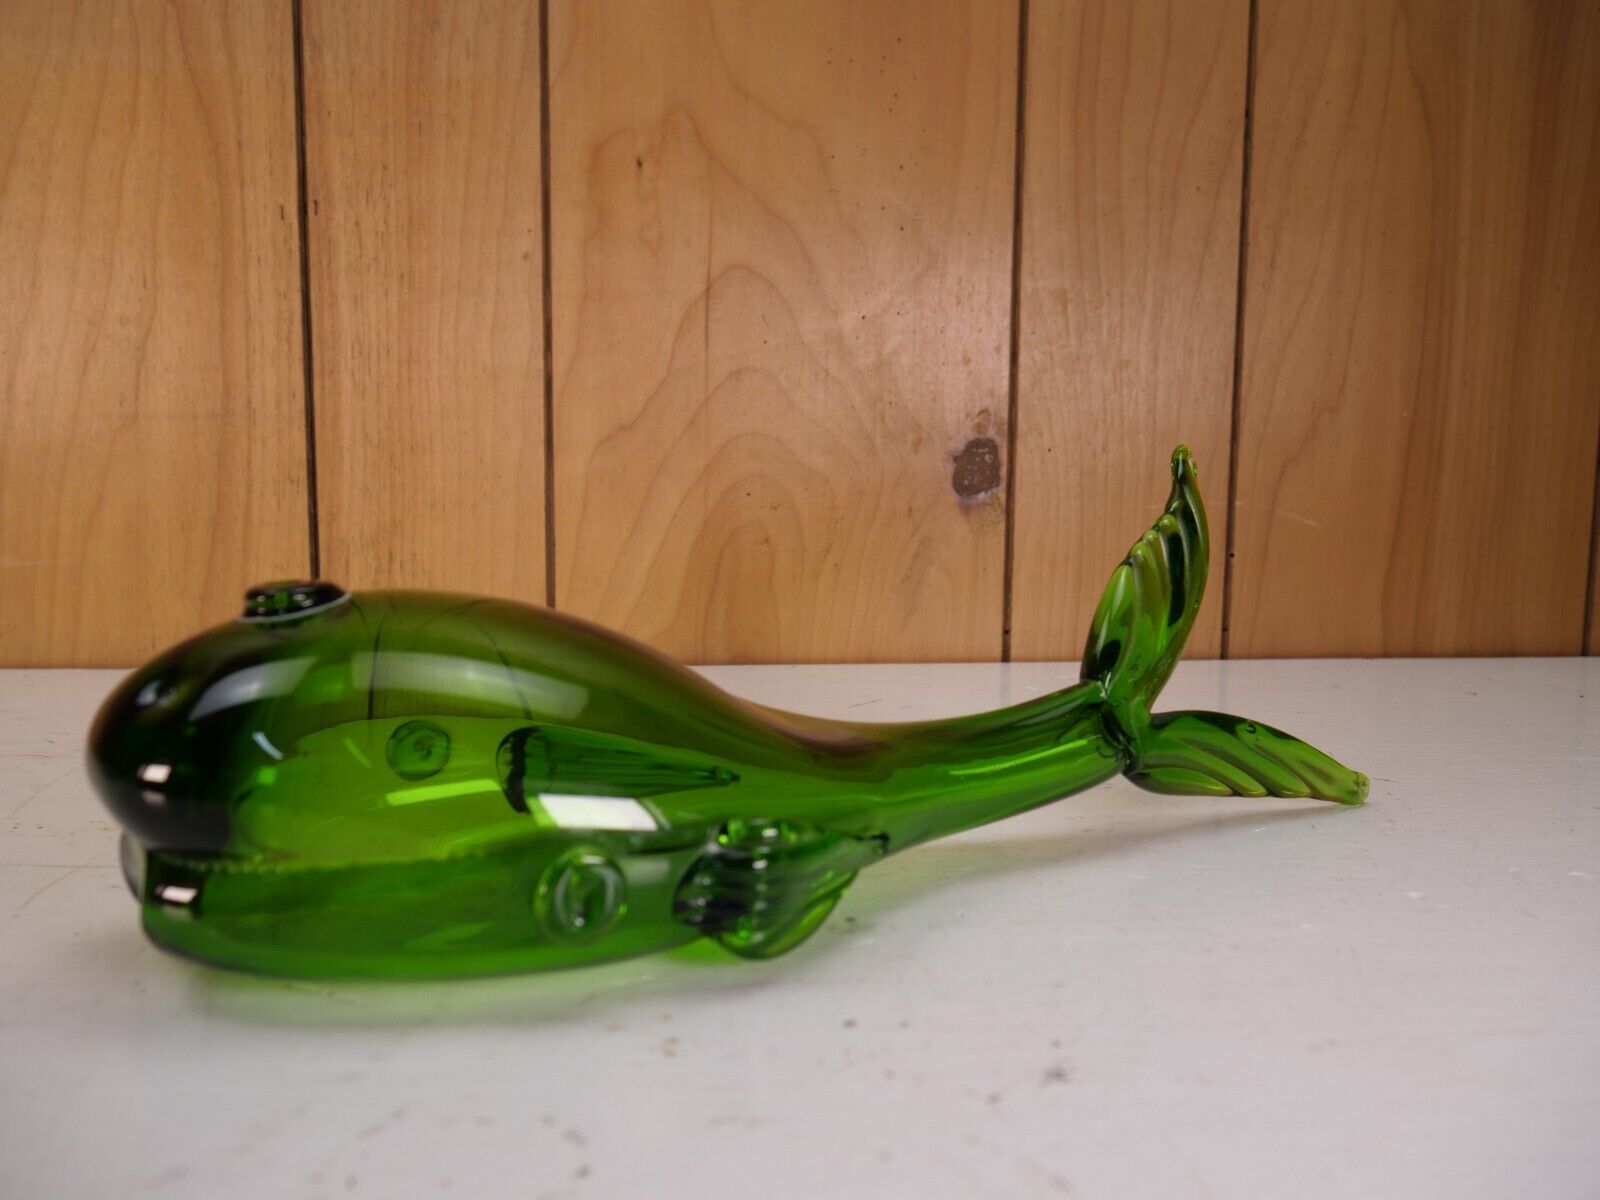 Blenko?? Olive Green 1970’s Glass Whale Hand Blown Paperweight Light Catcher